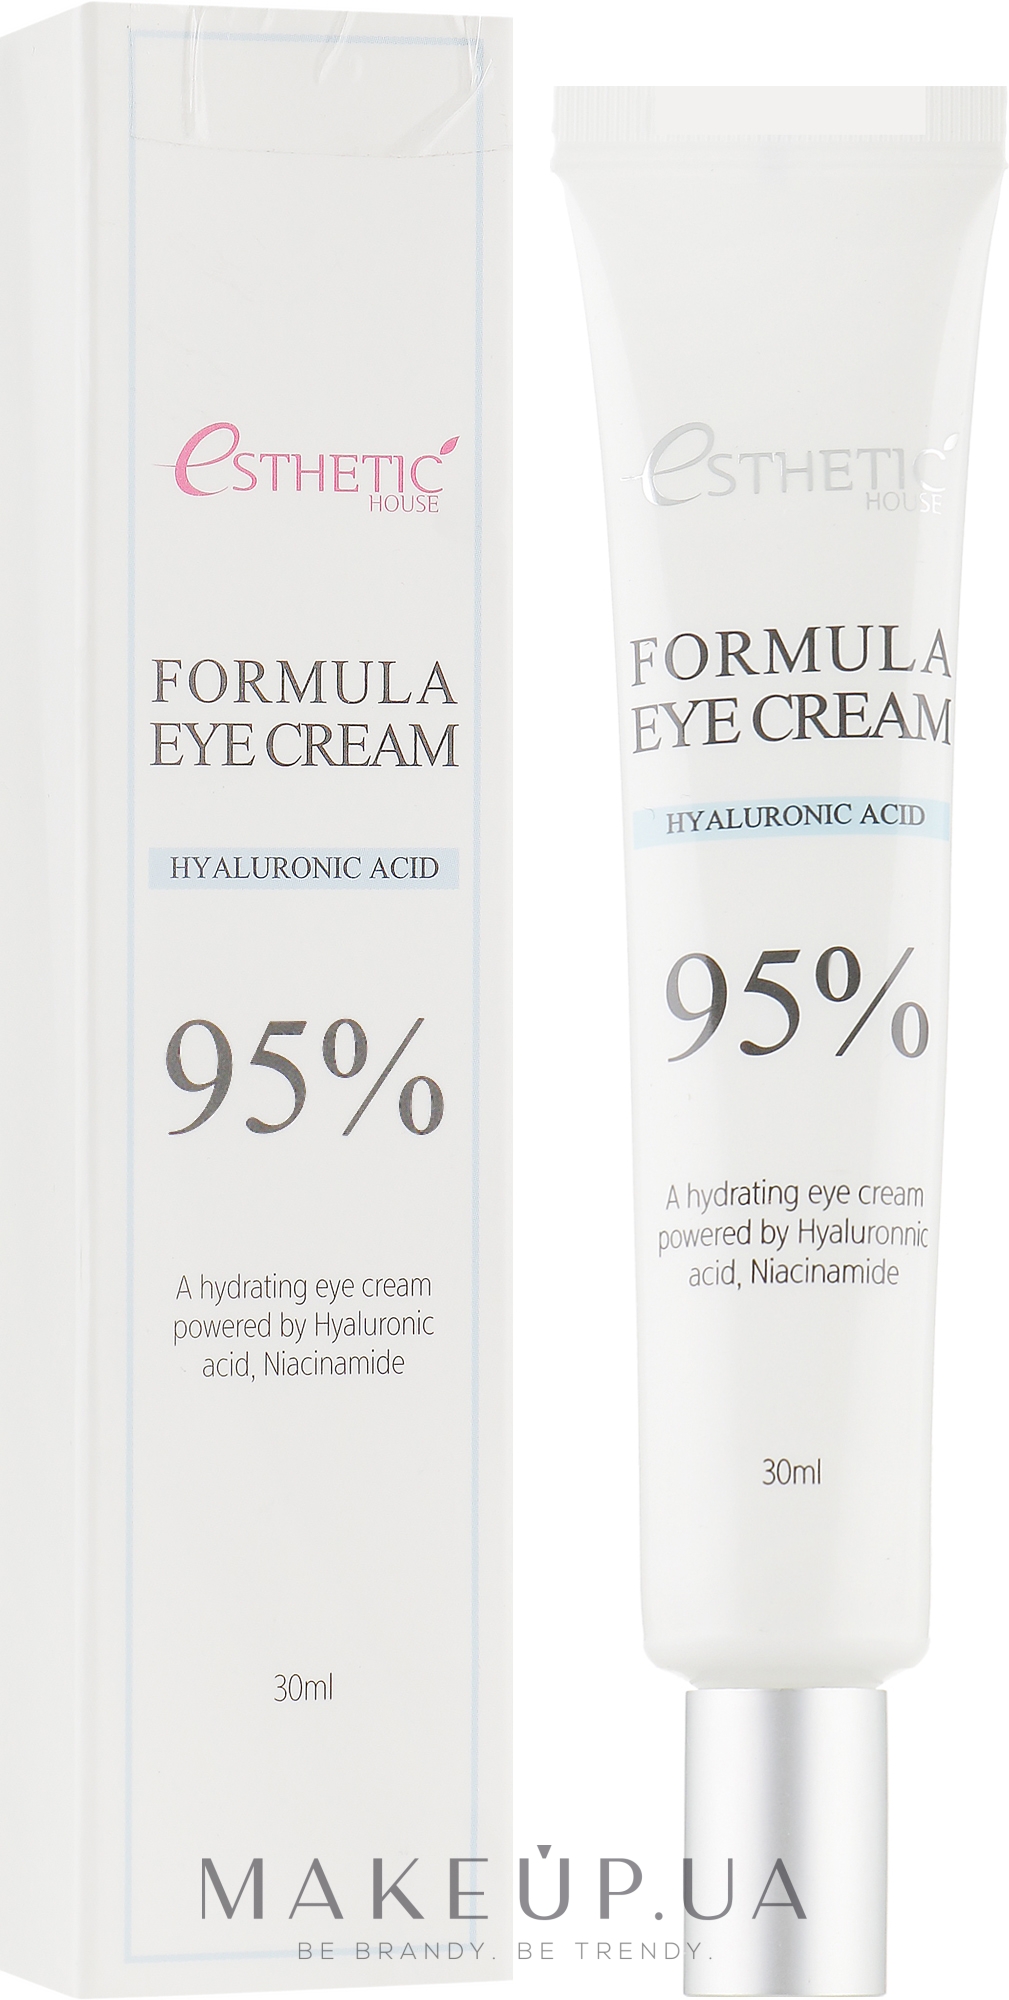 Зволожувальний крем для шкіри навколо очей з гіалуроновою кислотою і ніацинамідом - Esthetic House Formula Eye Cream Hyaluronic Acid 95% — фото 30ml